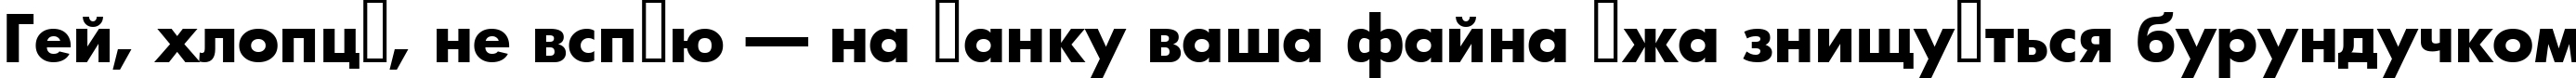 Пример написания шрифтом a_Futurica ExtraBold текста на украинском